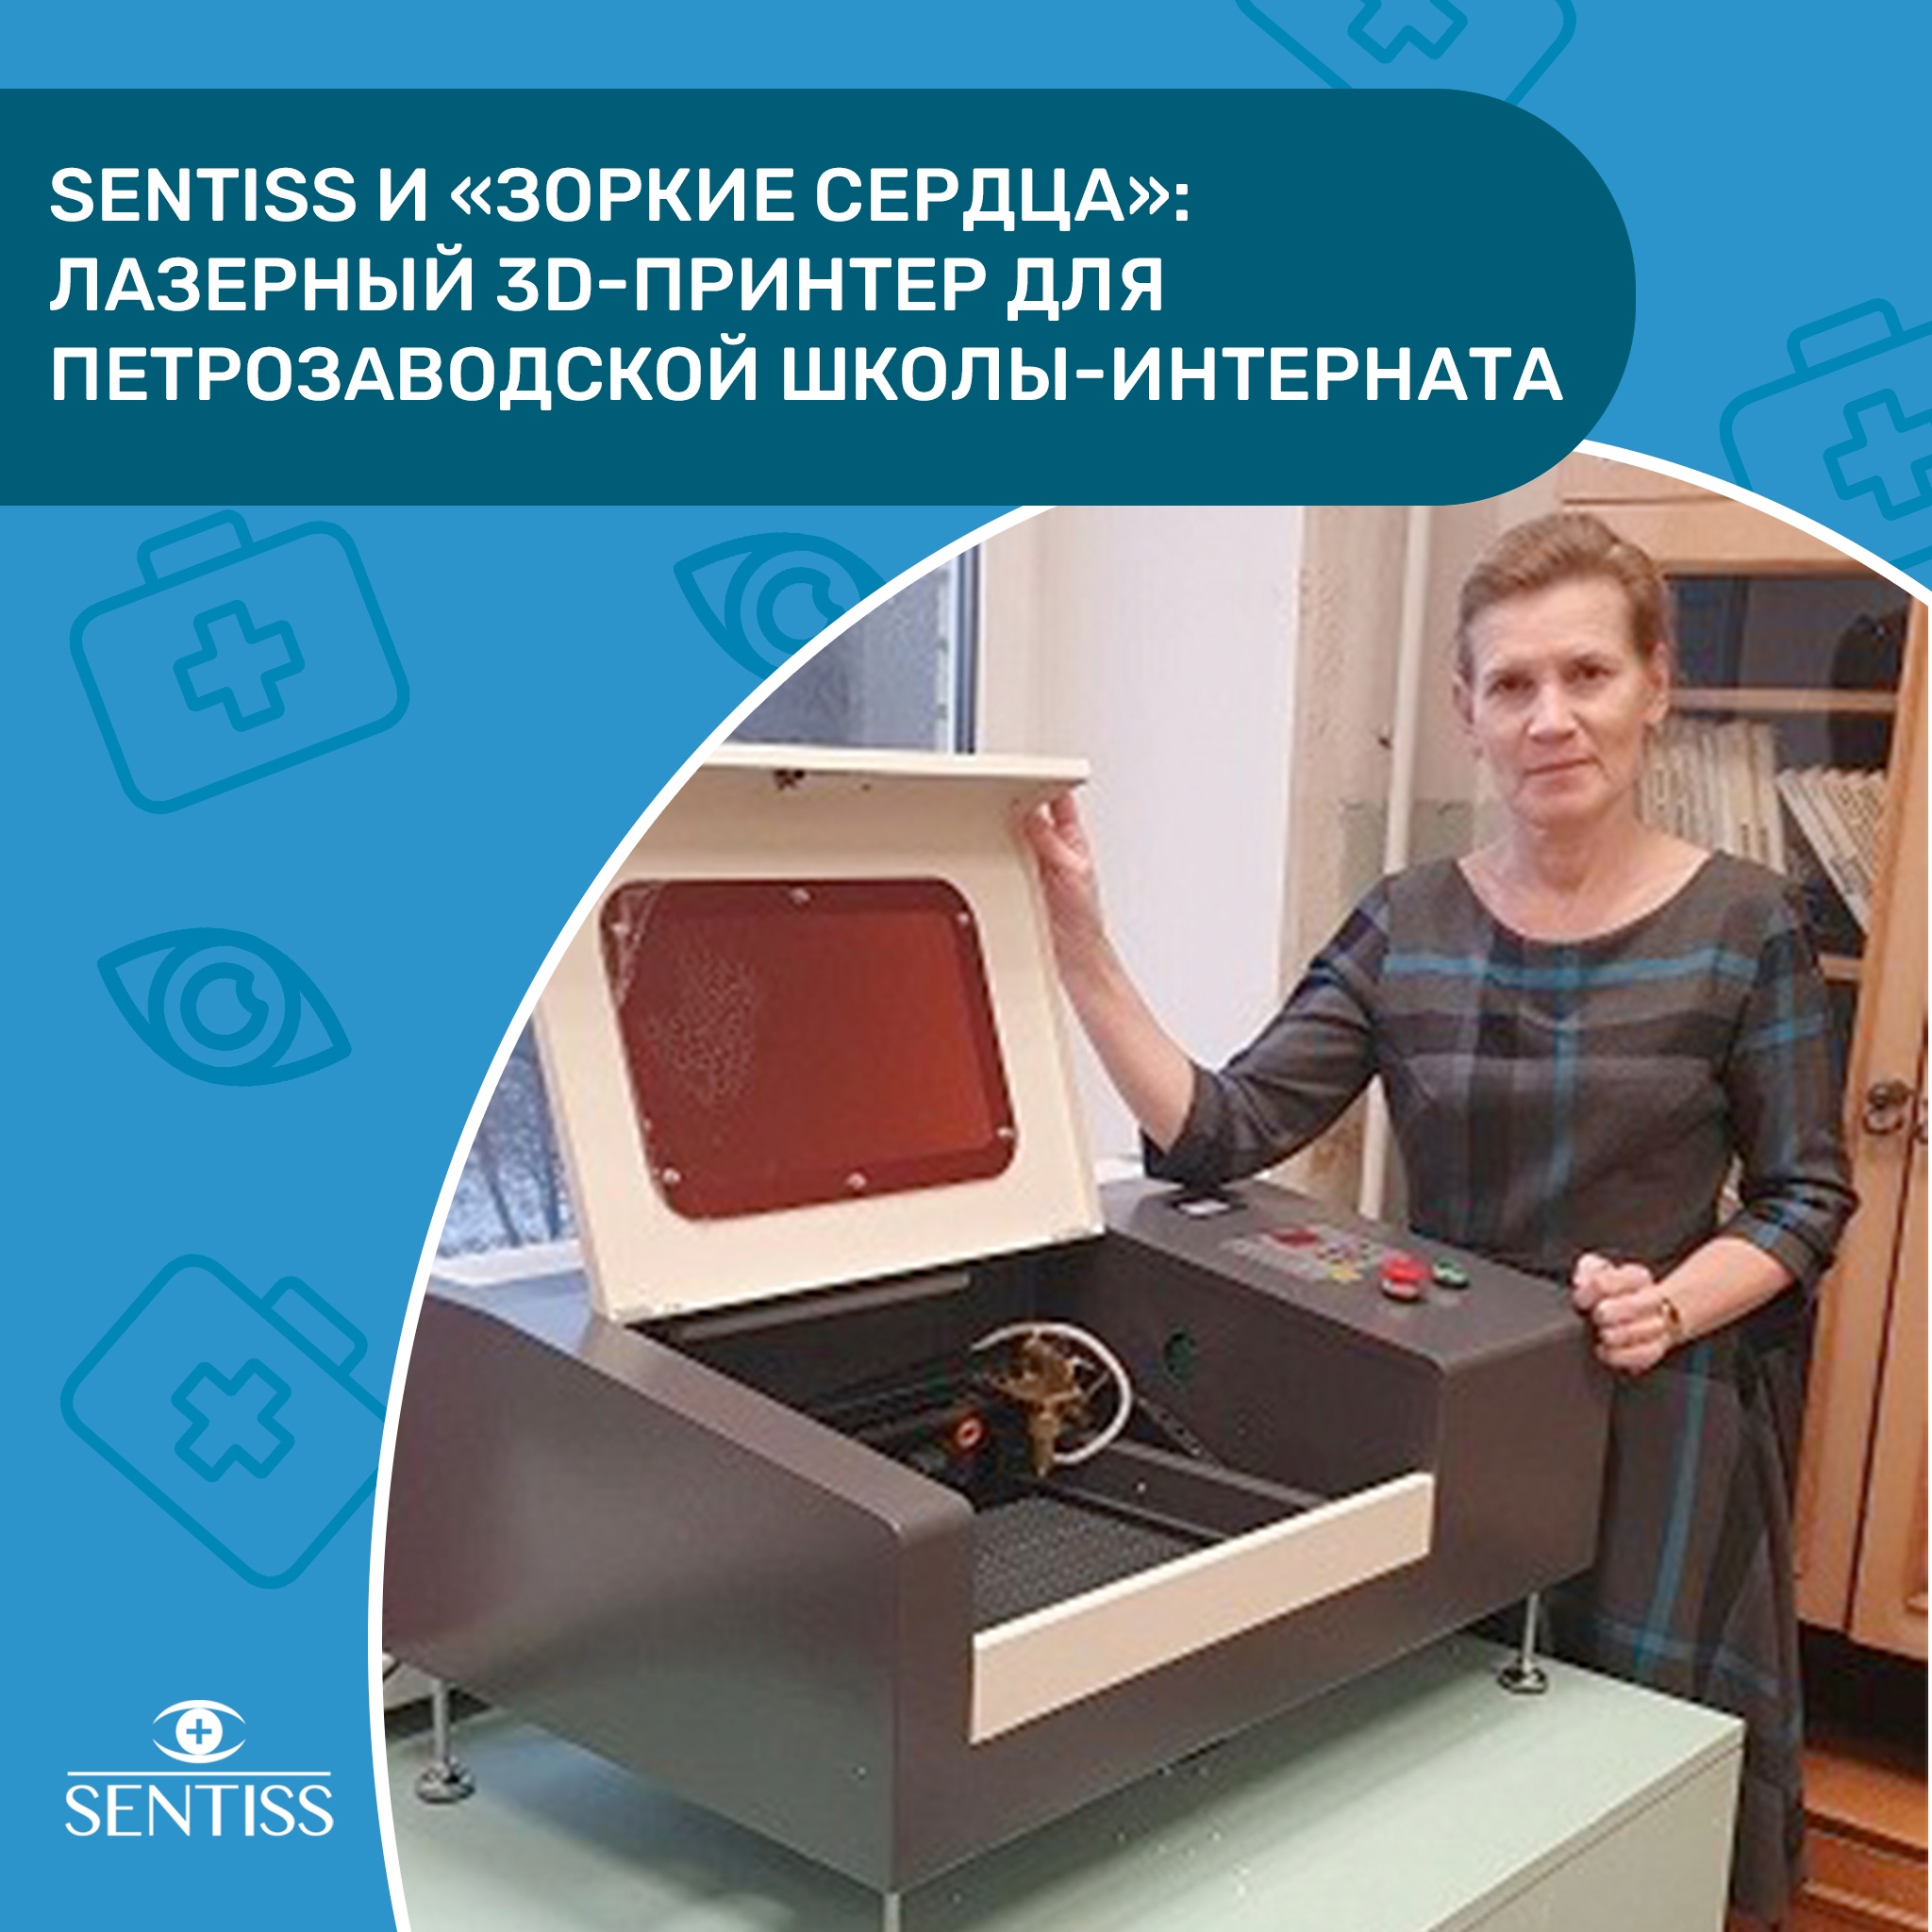 Лазерный 3D-принтер для Петрозаводской школы-интерната